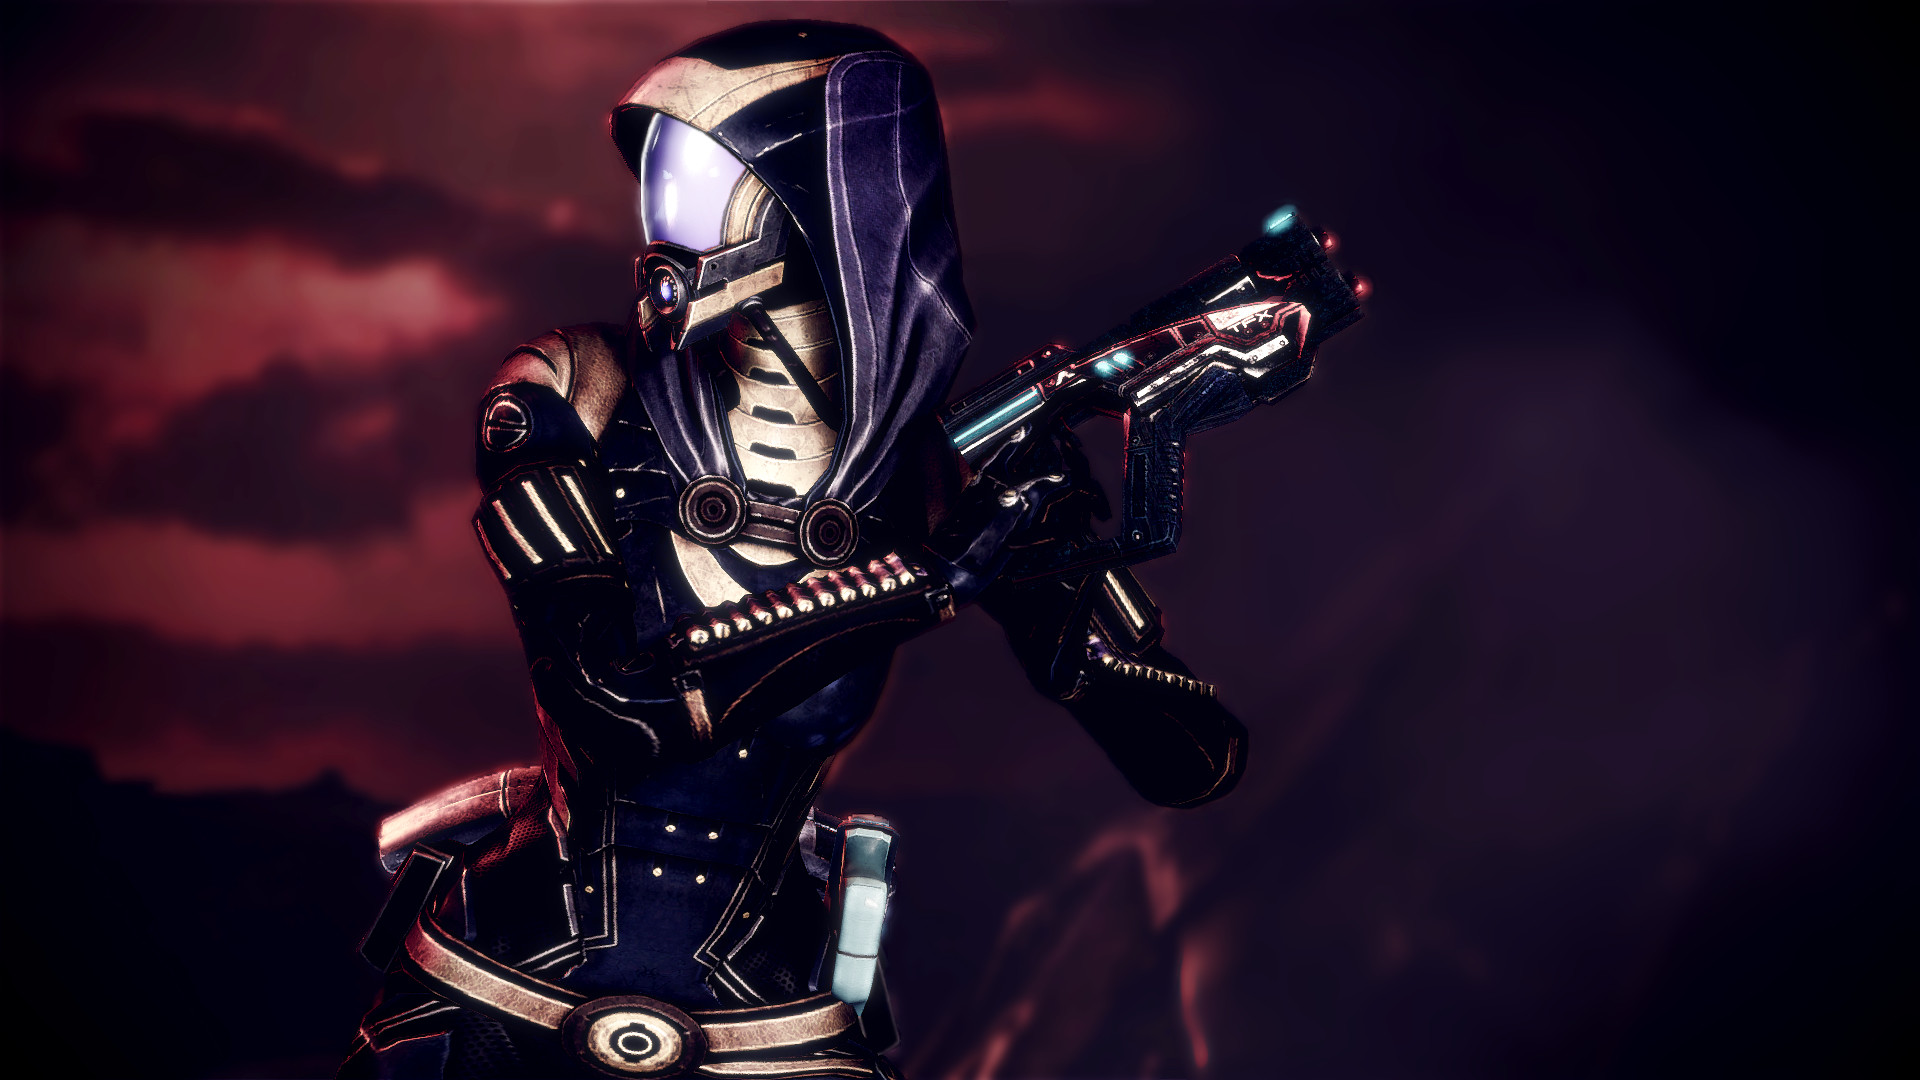 1920x1080 Mass Effect Tali Zorah Warrior sci-fi cyborg wallpaper |  | 210869  | WallpaperUP